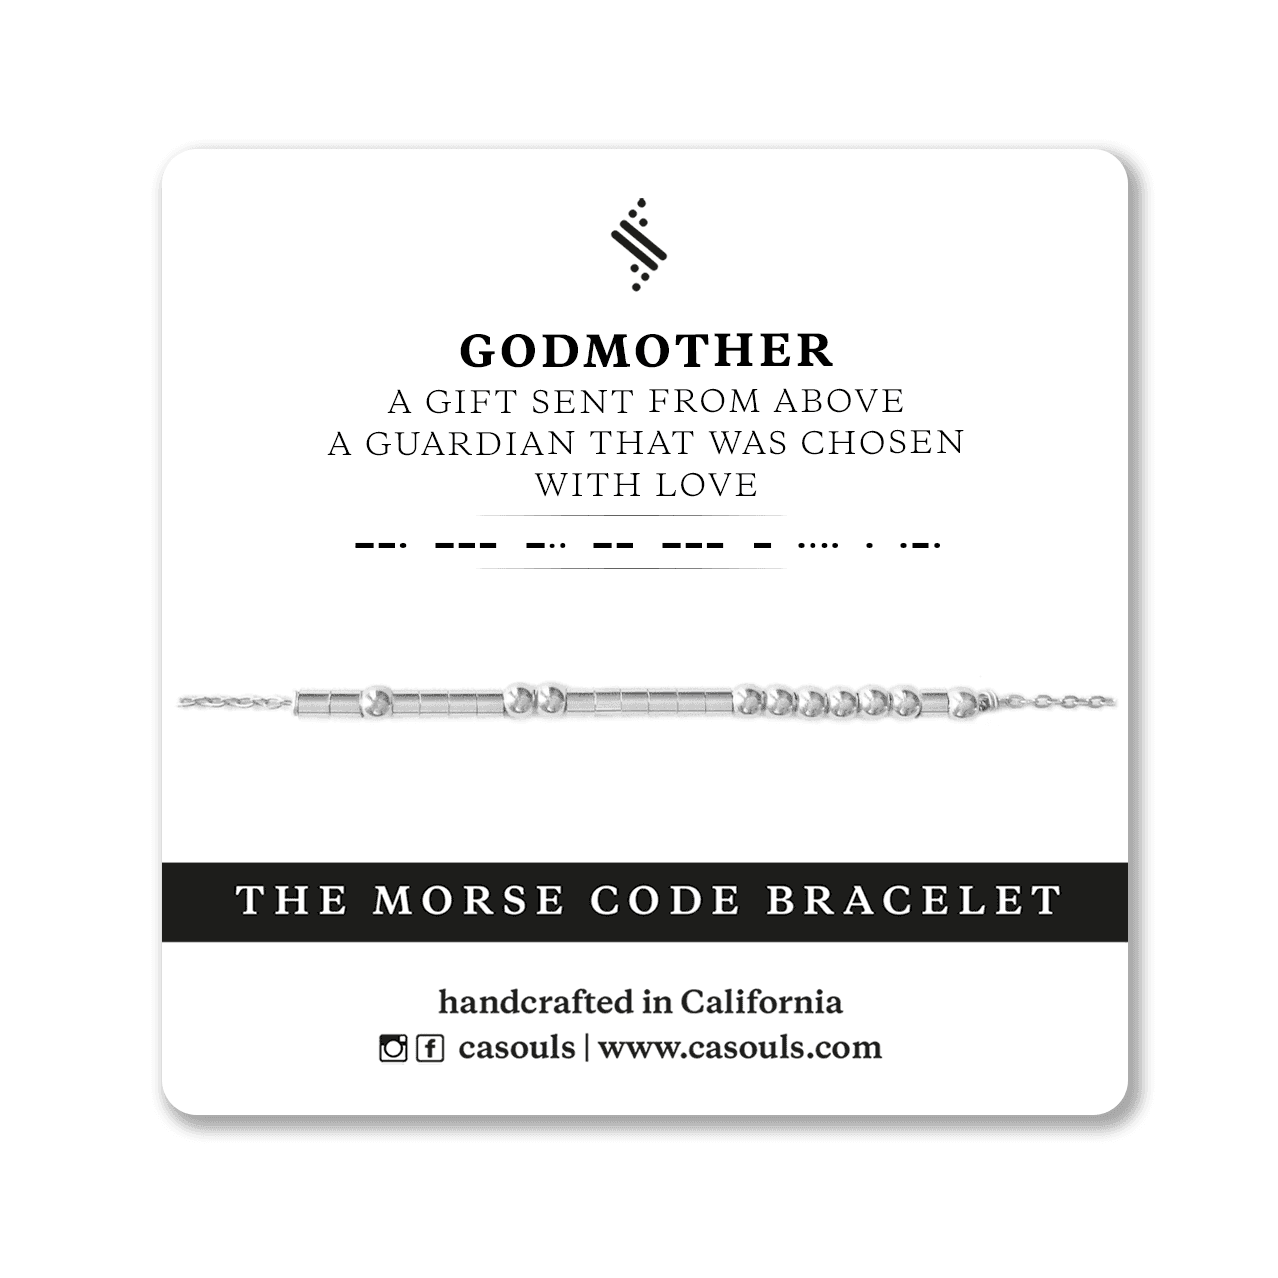 GODMOTHER GIFT - MORSE CODE BRACELET